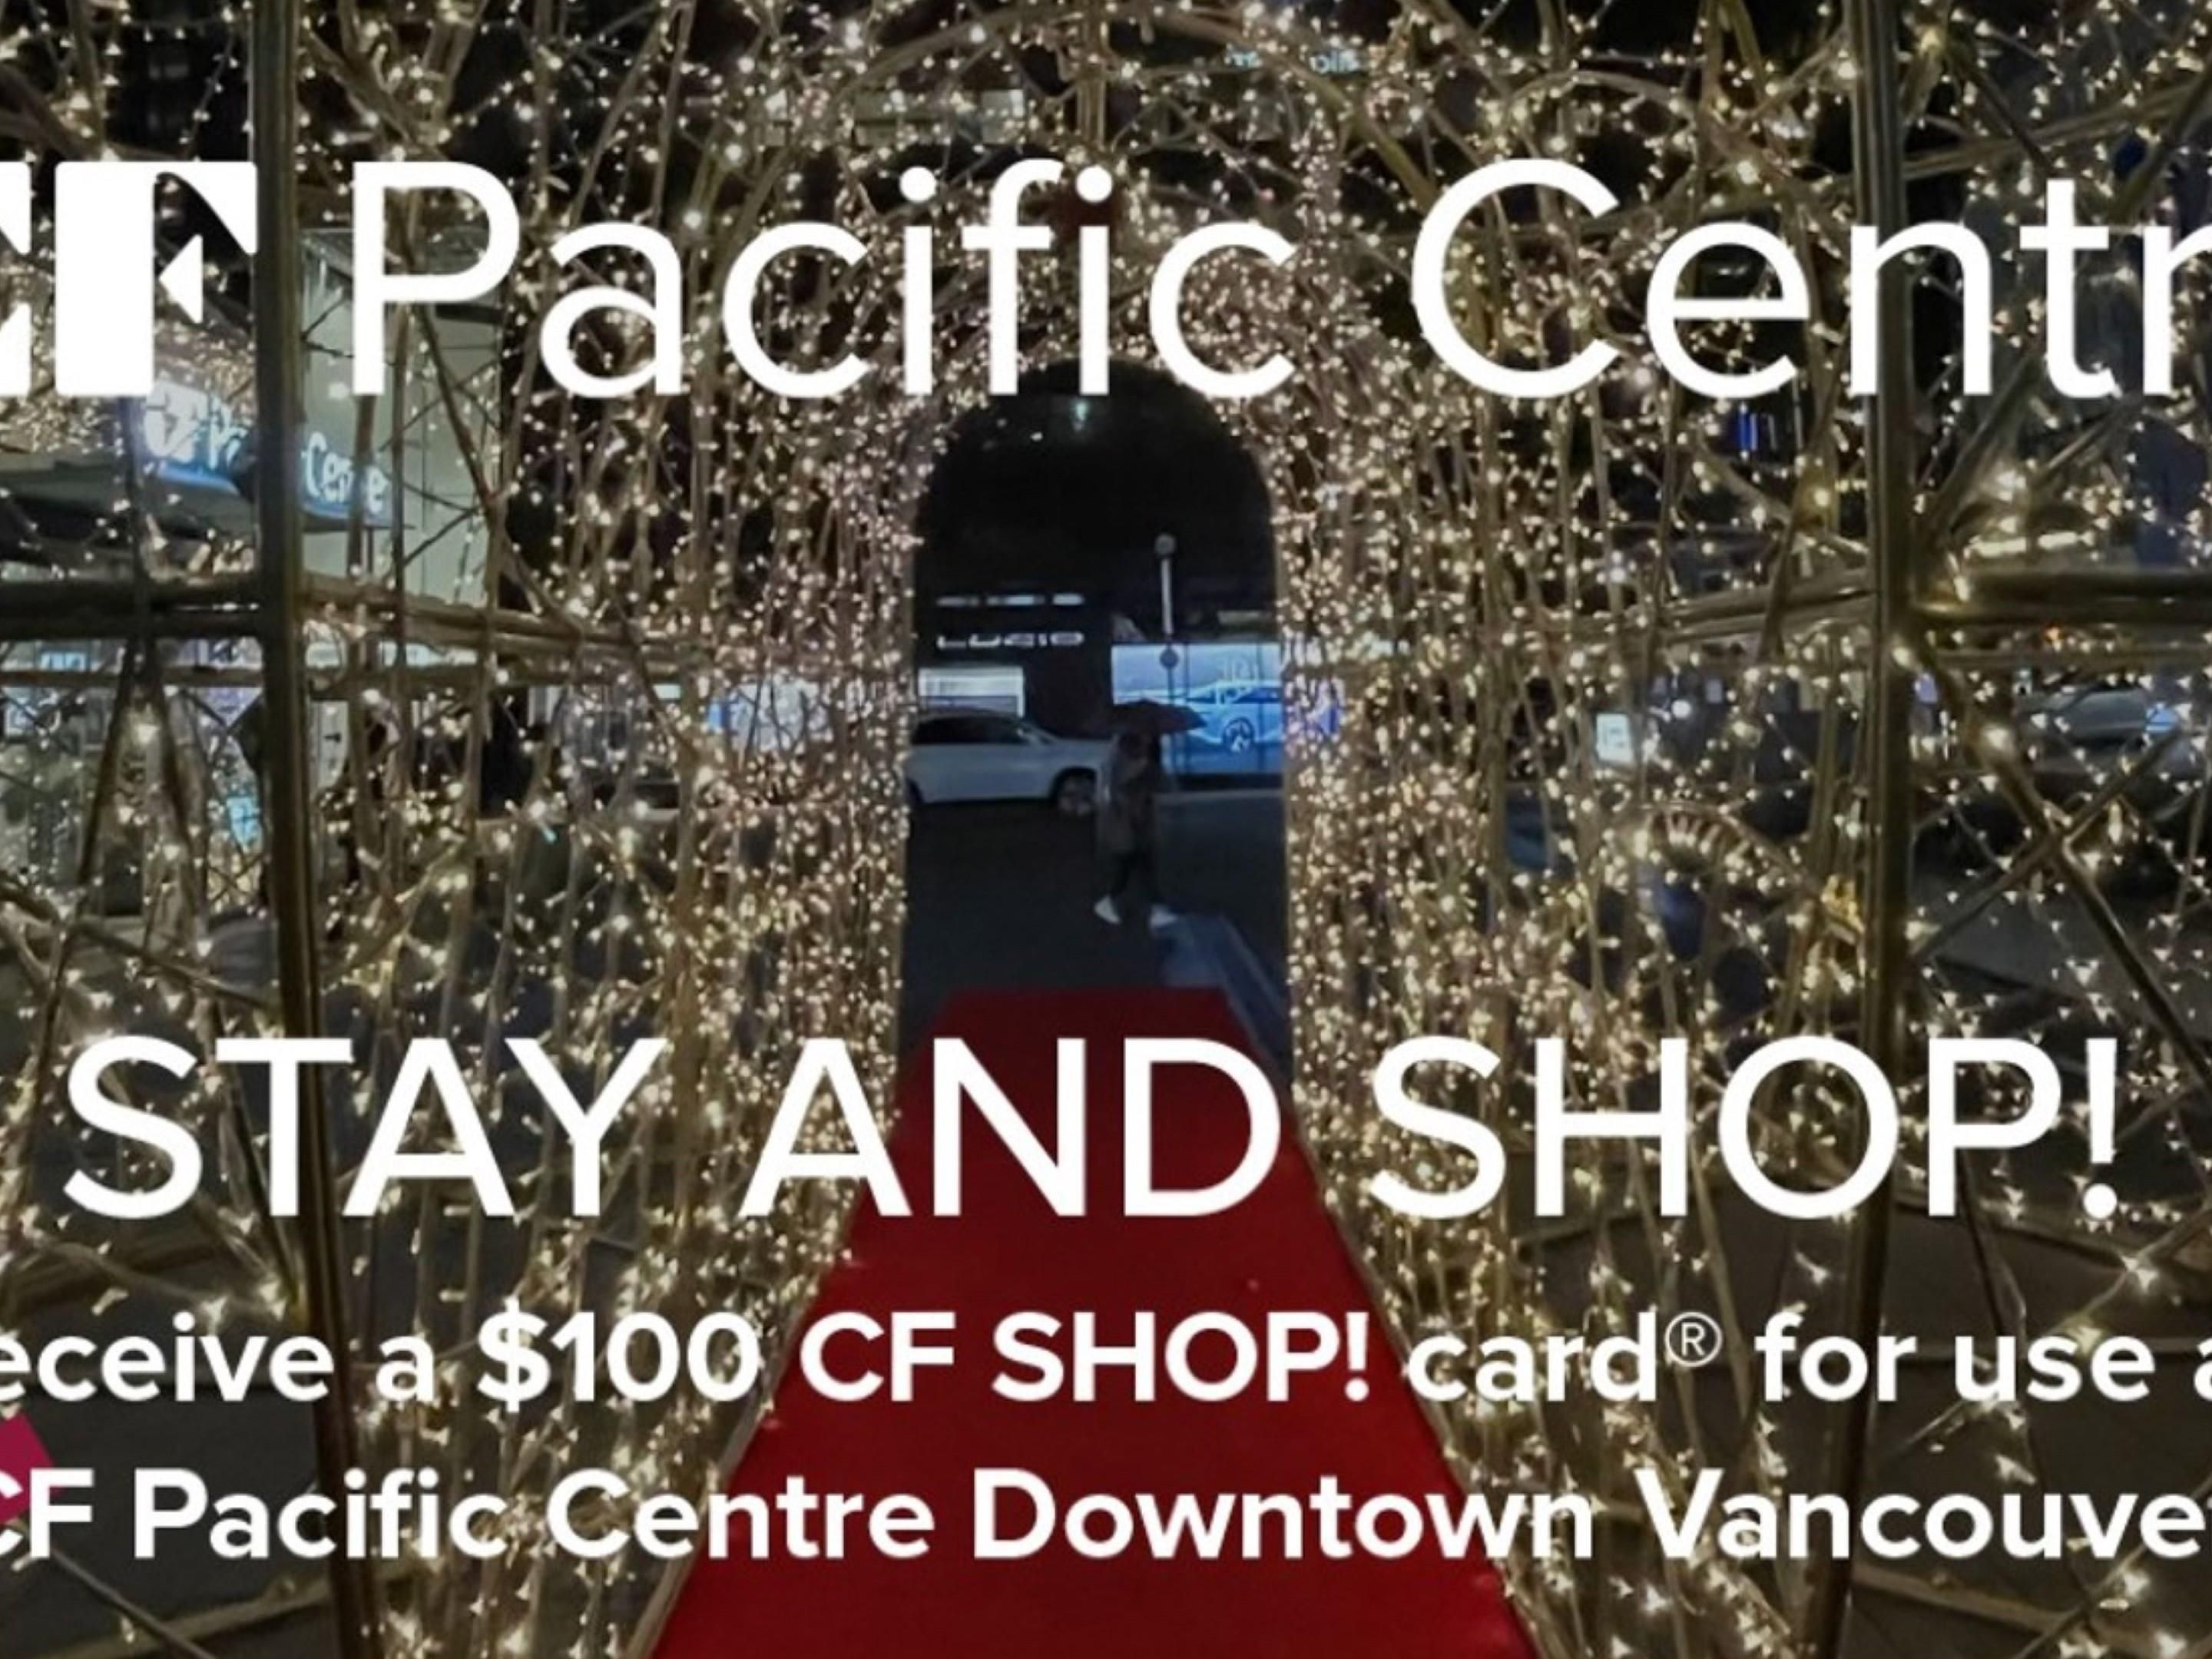 Get a $100 CF Shop! card®